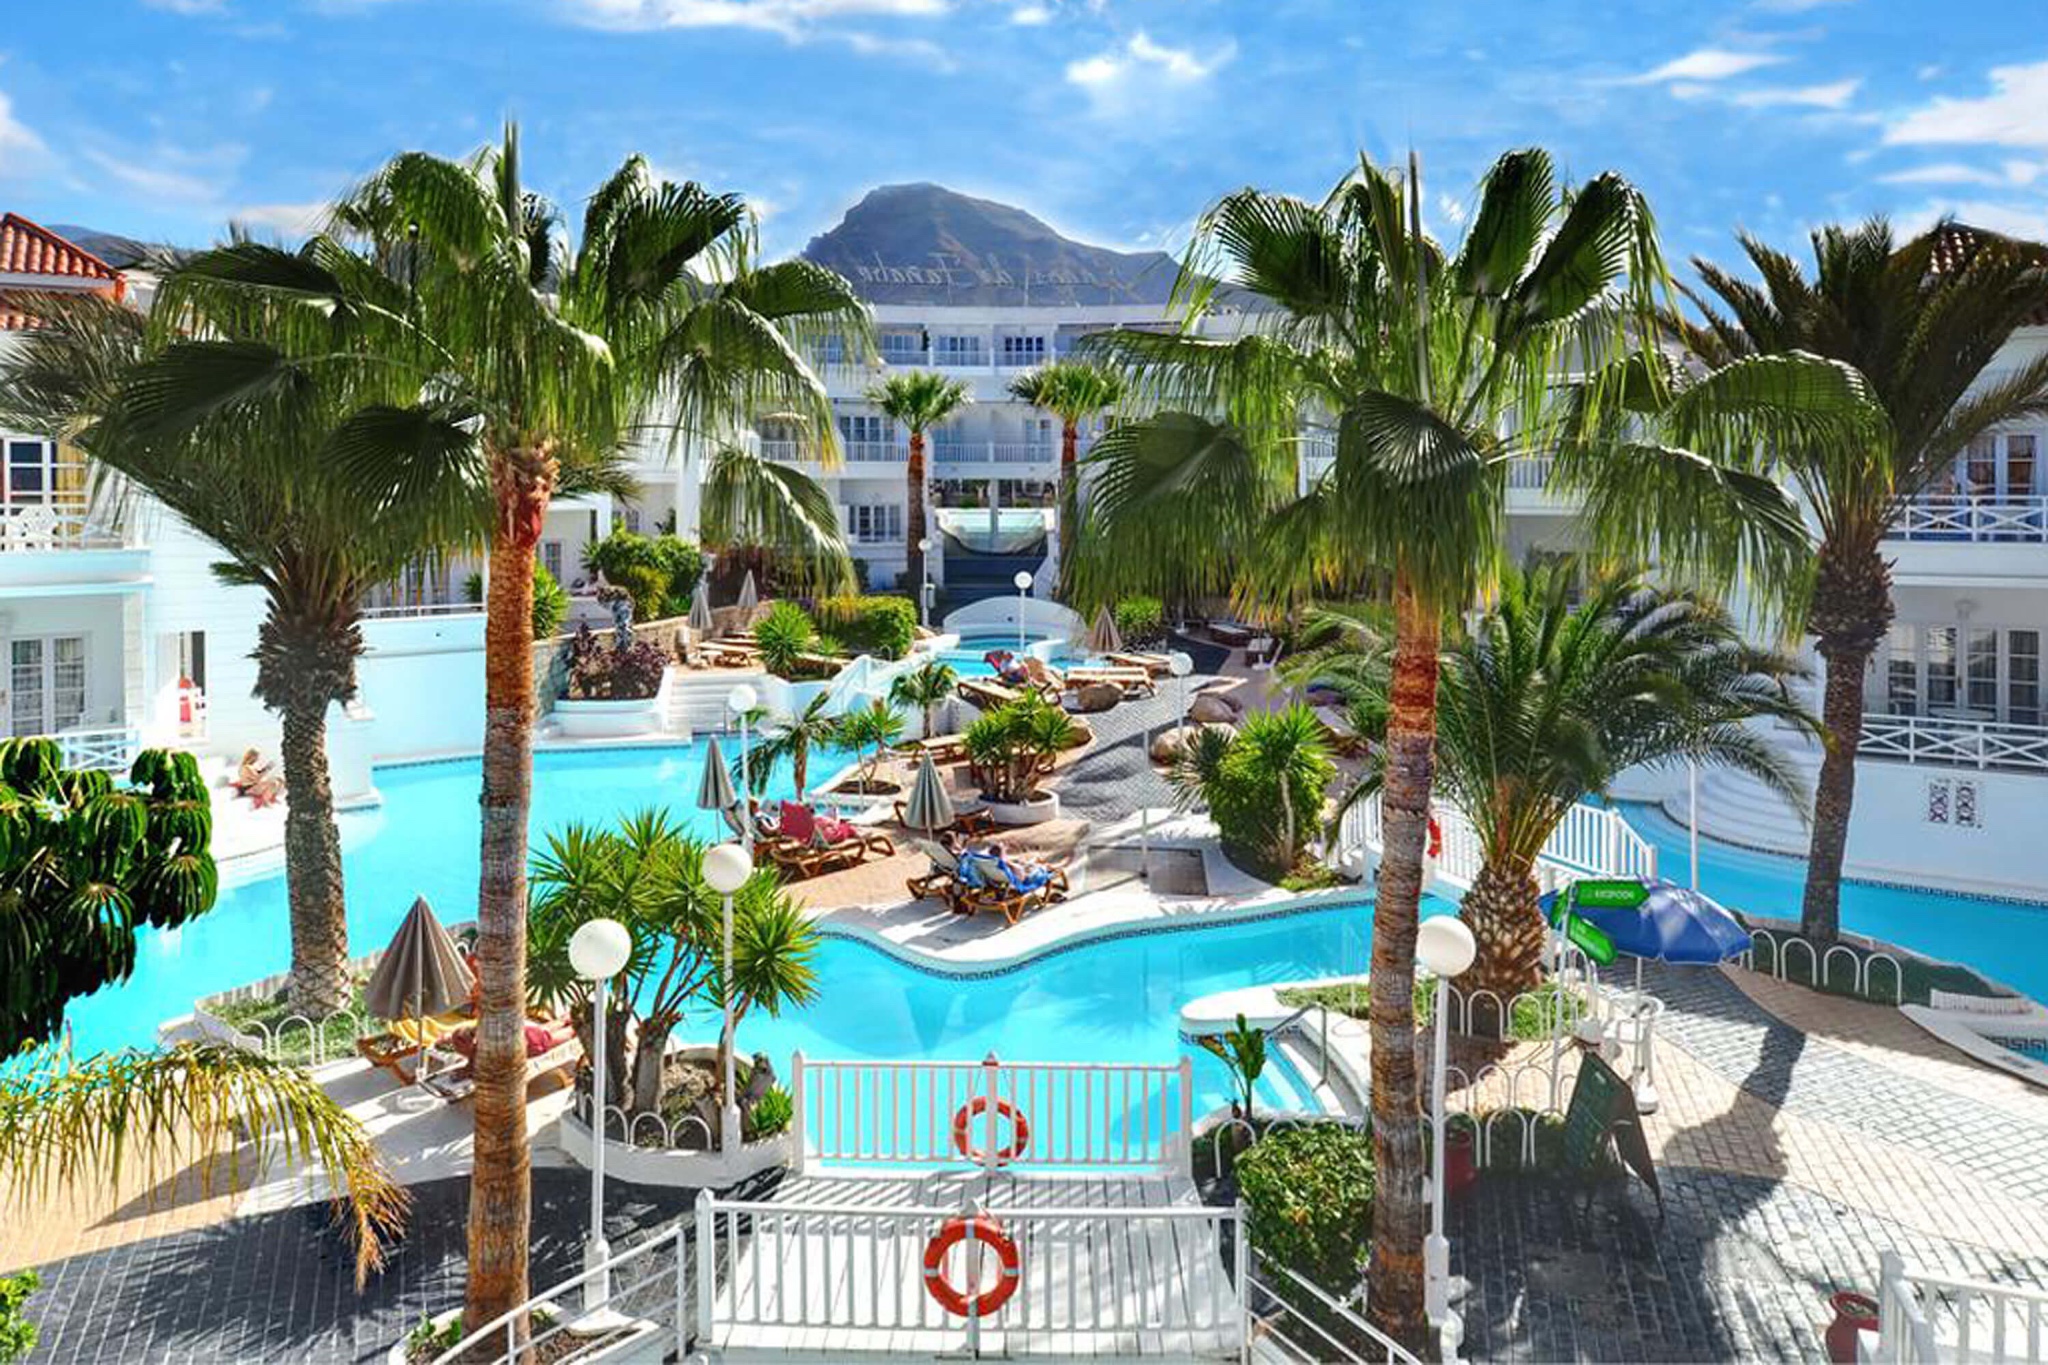 Ferielejlighed beliggende i en tropisk resort med fælles pool og kun få minutter fra stranden